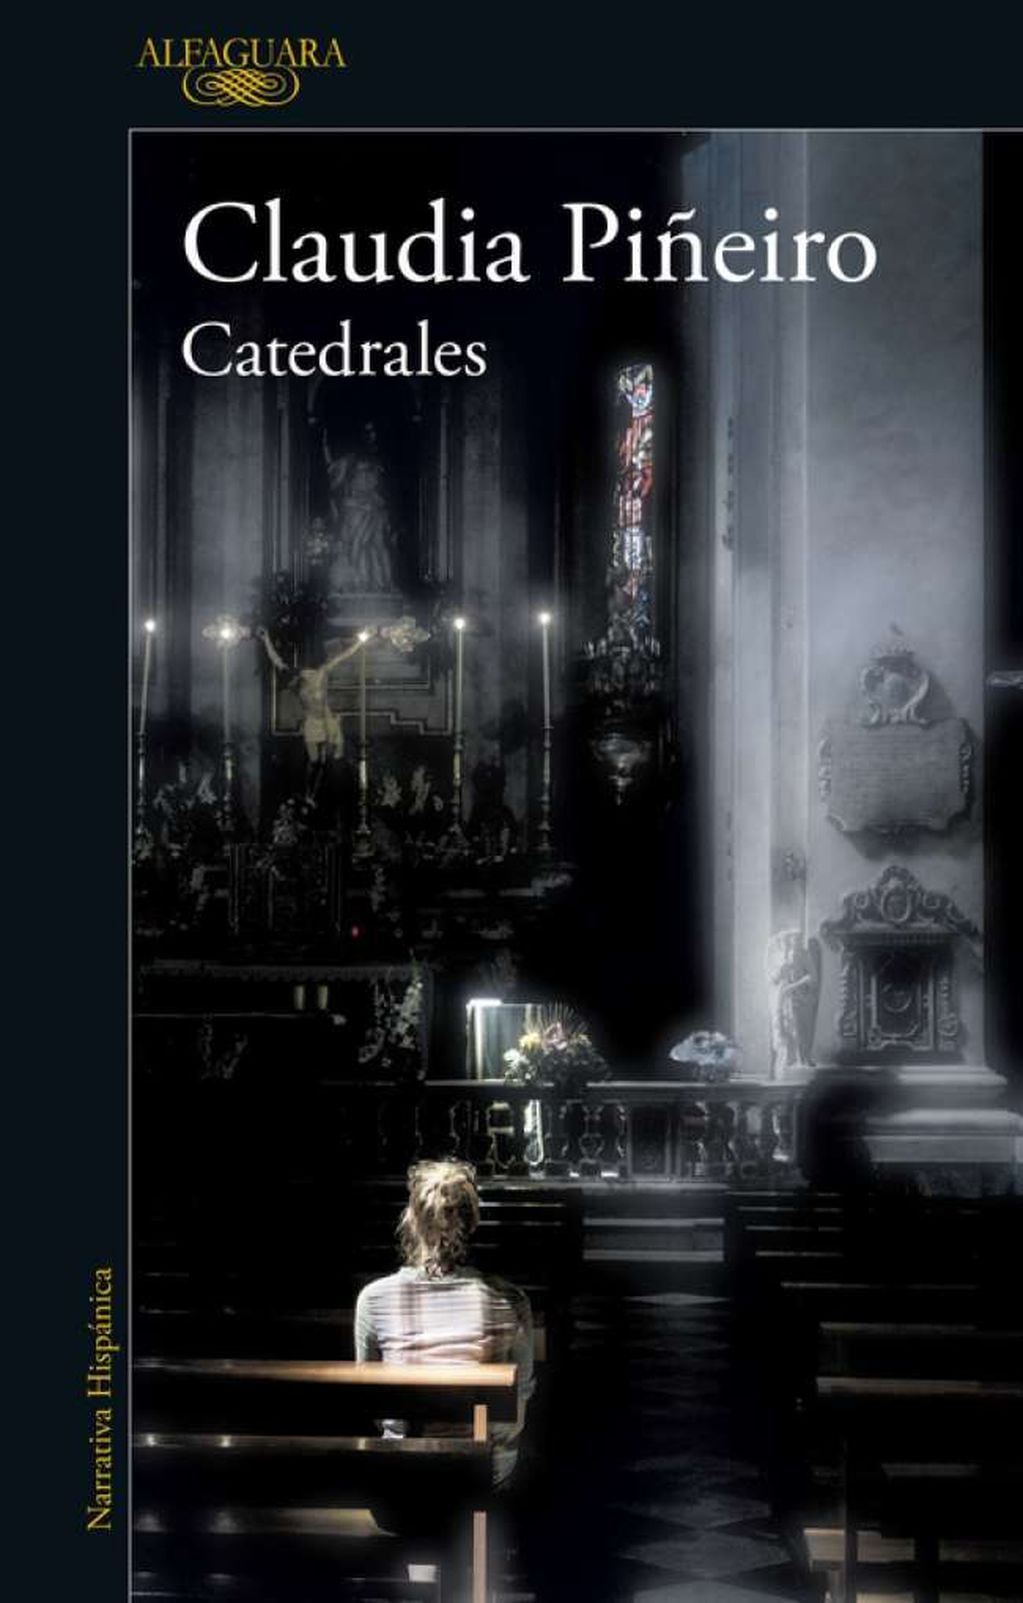 
    Tapa del libro "Catedrales"
   